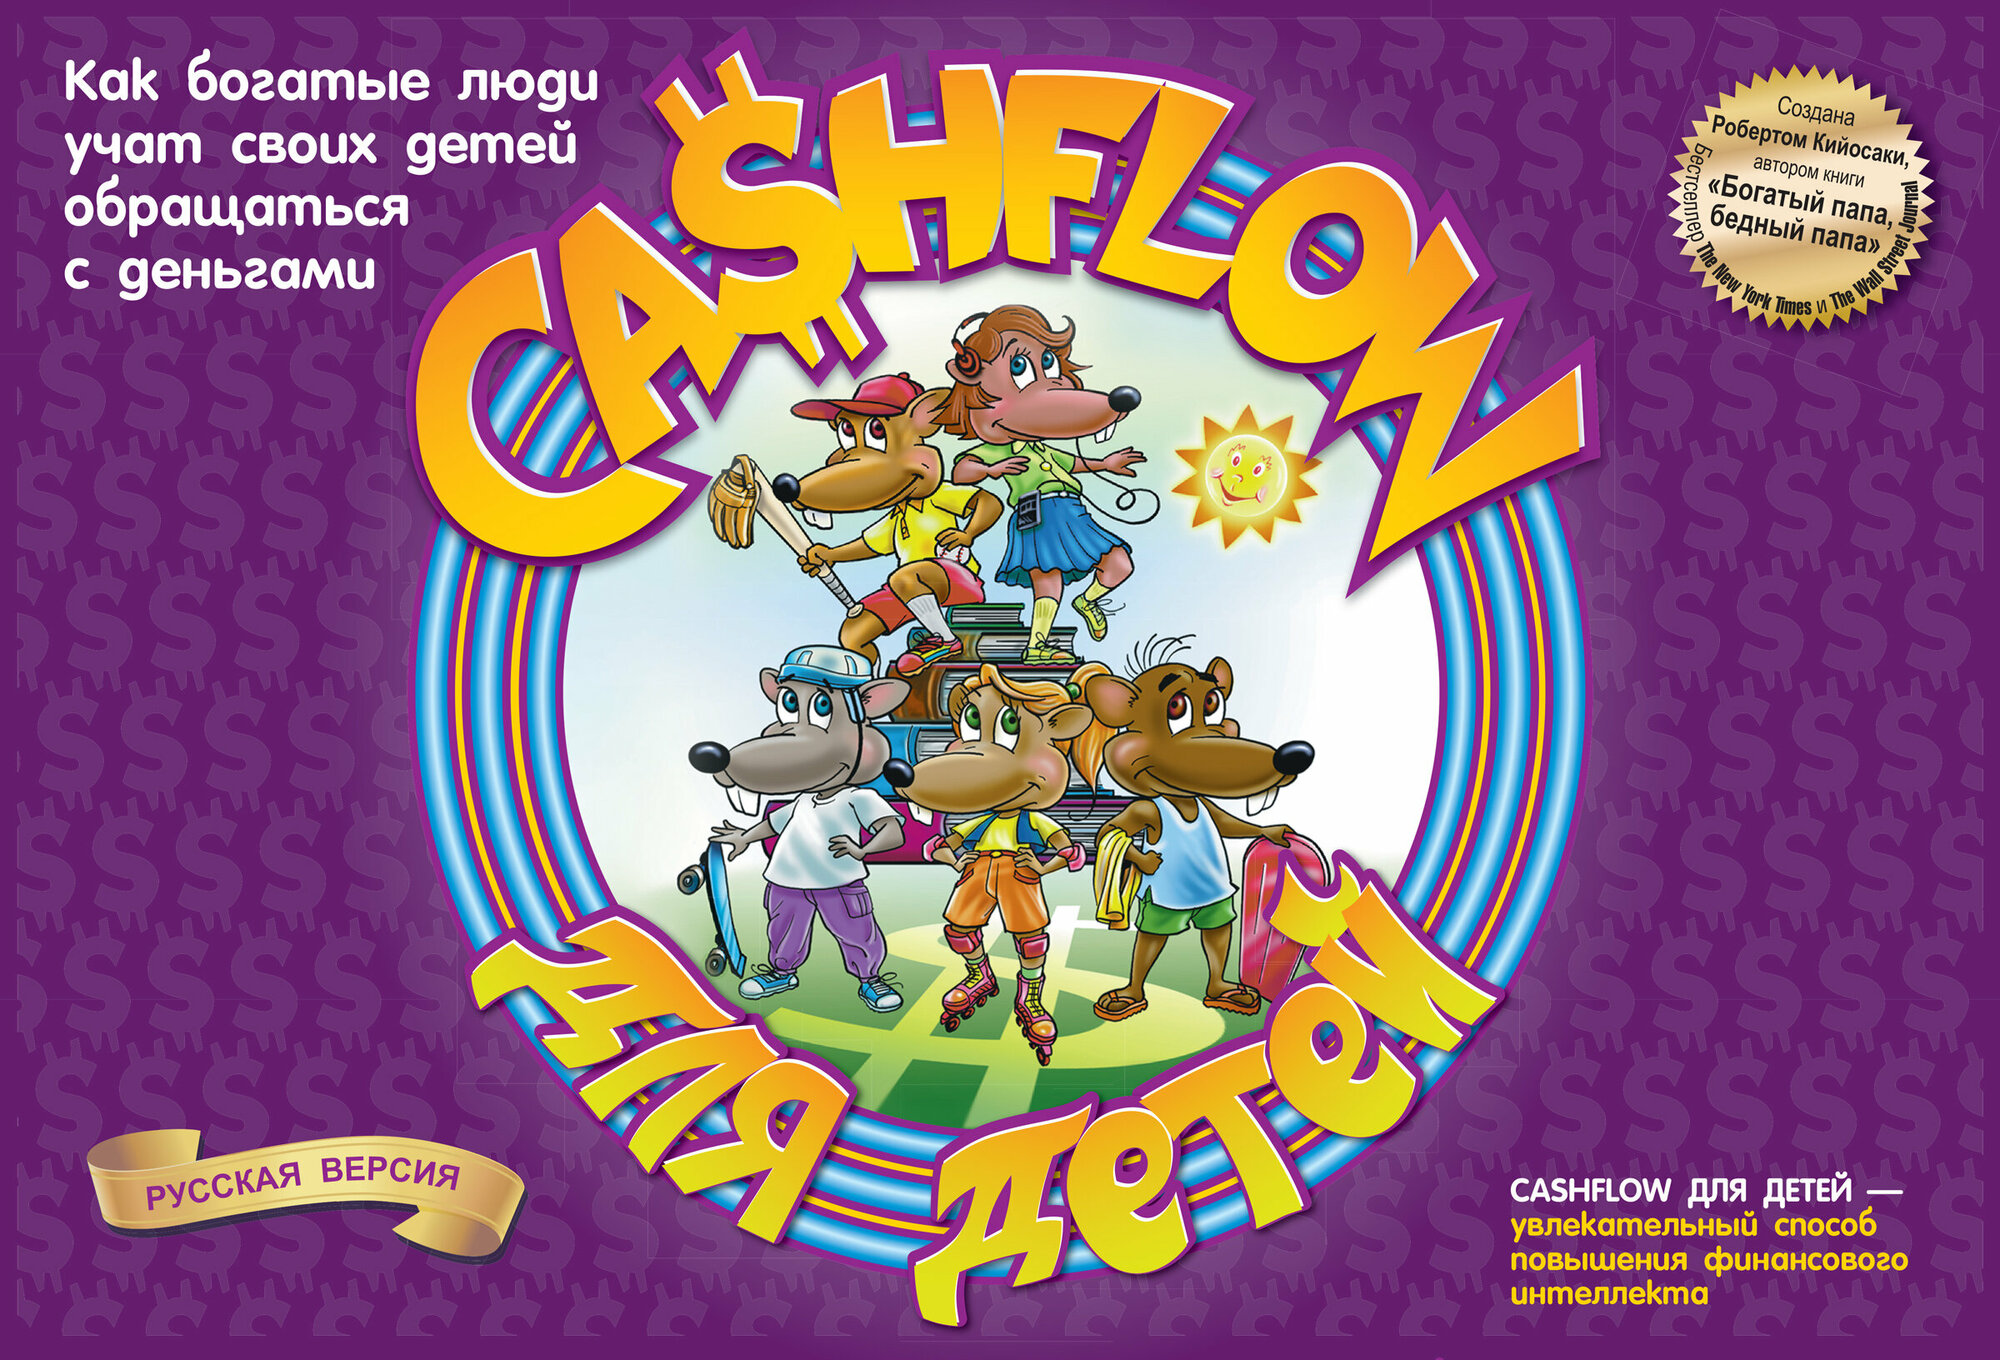 Игра "Cashflow для детей" Попурри - фото №16